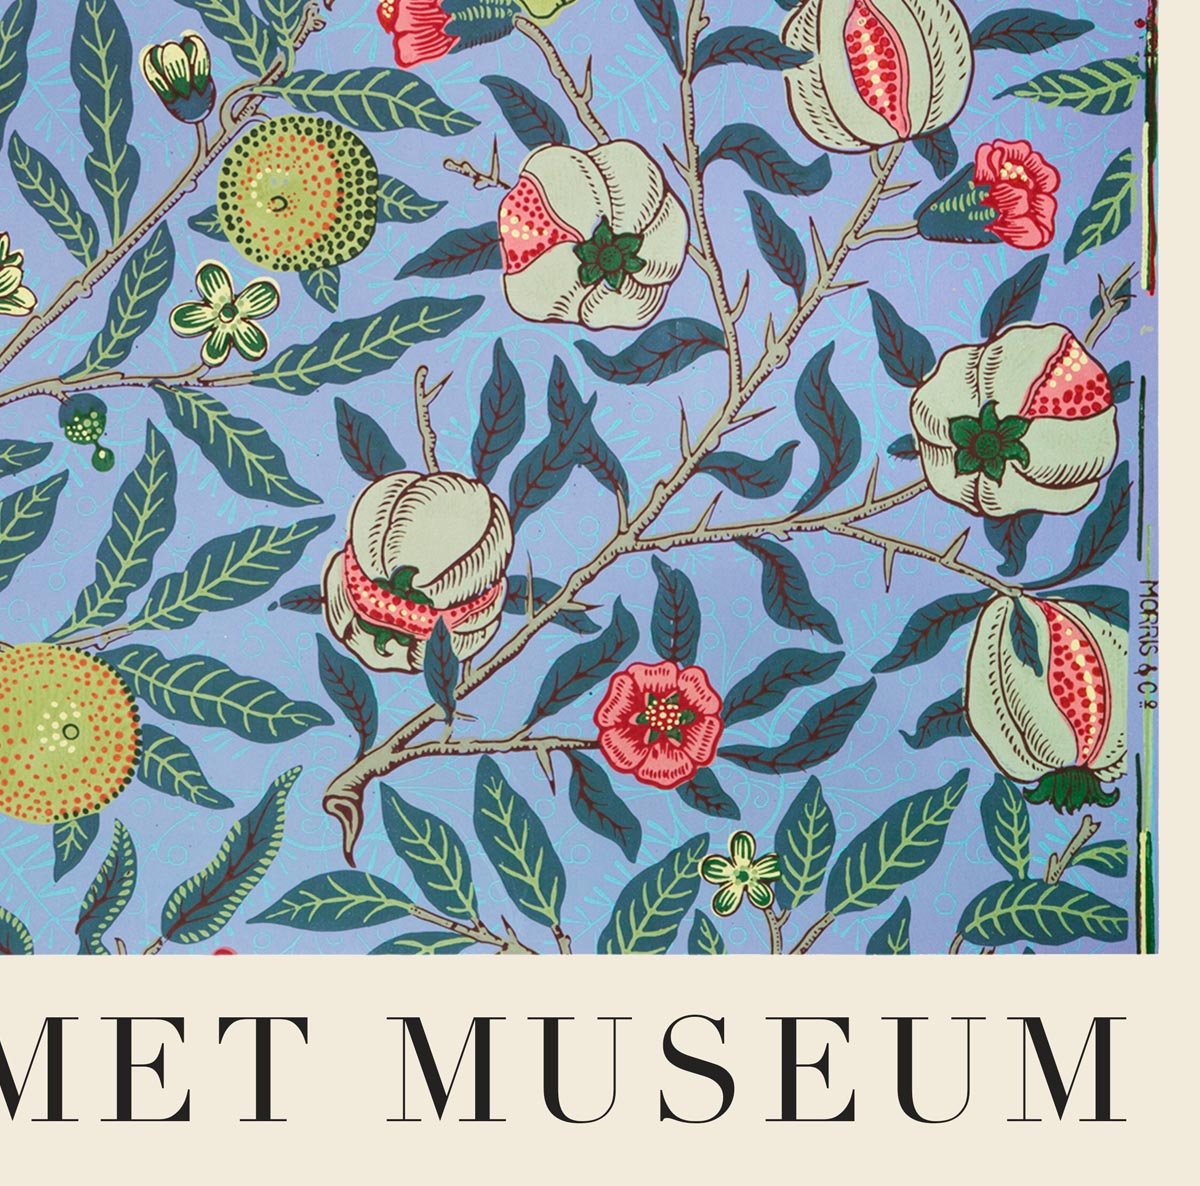 William Morris Pomegranate Art Exhibition Poster